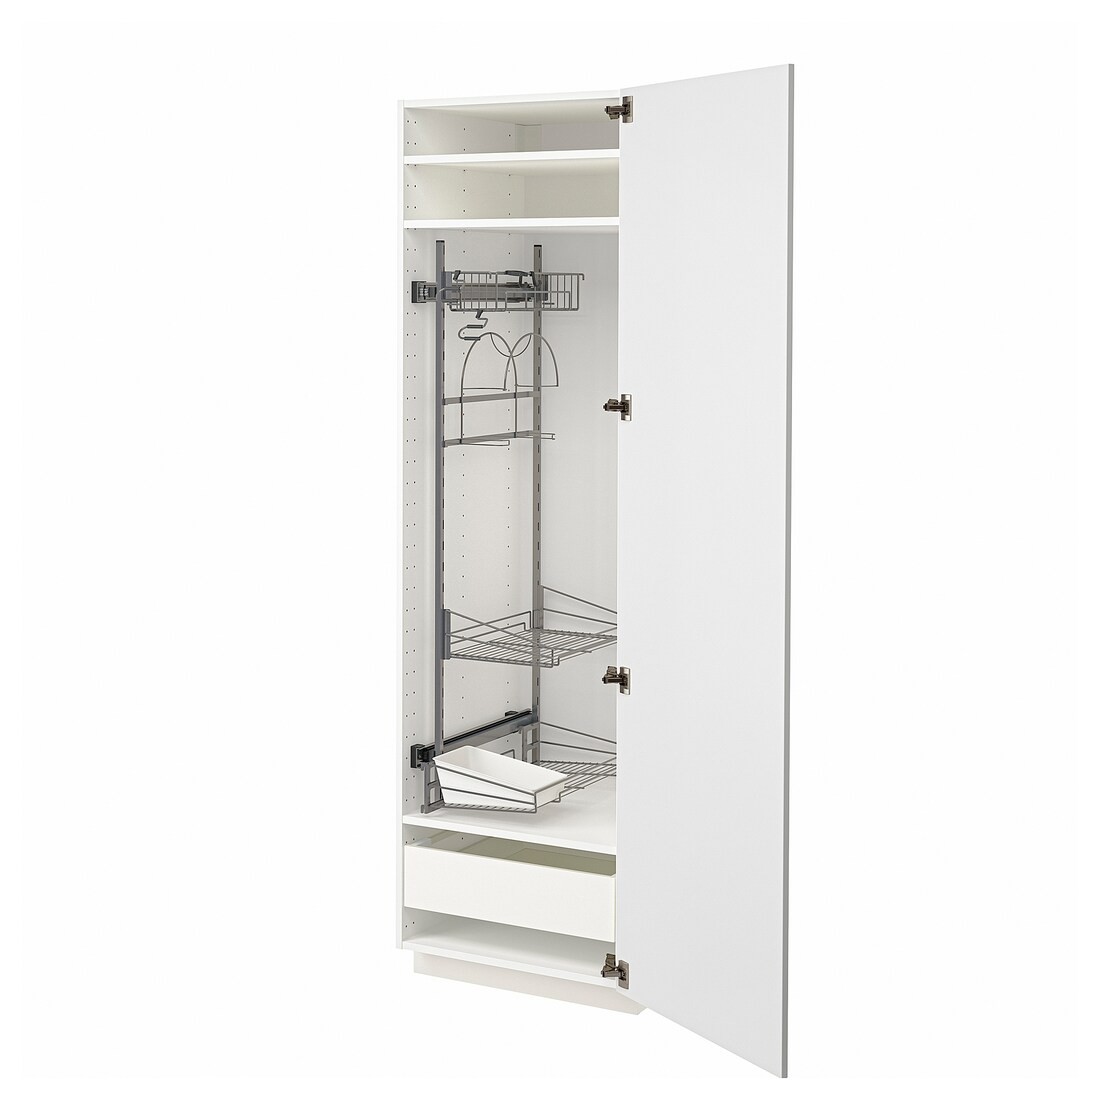 IKEA METOD МЕТОД / MAXIMERA МАКСИМЕРА Высокий шкаф с отделением для аксессуаров для уборки, белый / Stensund белый, 60x60x200 см 69409341 694.093.41